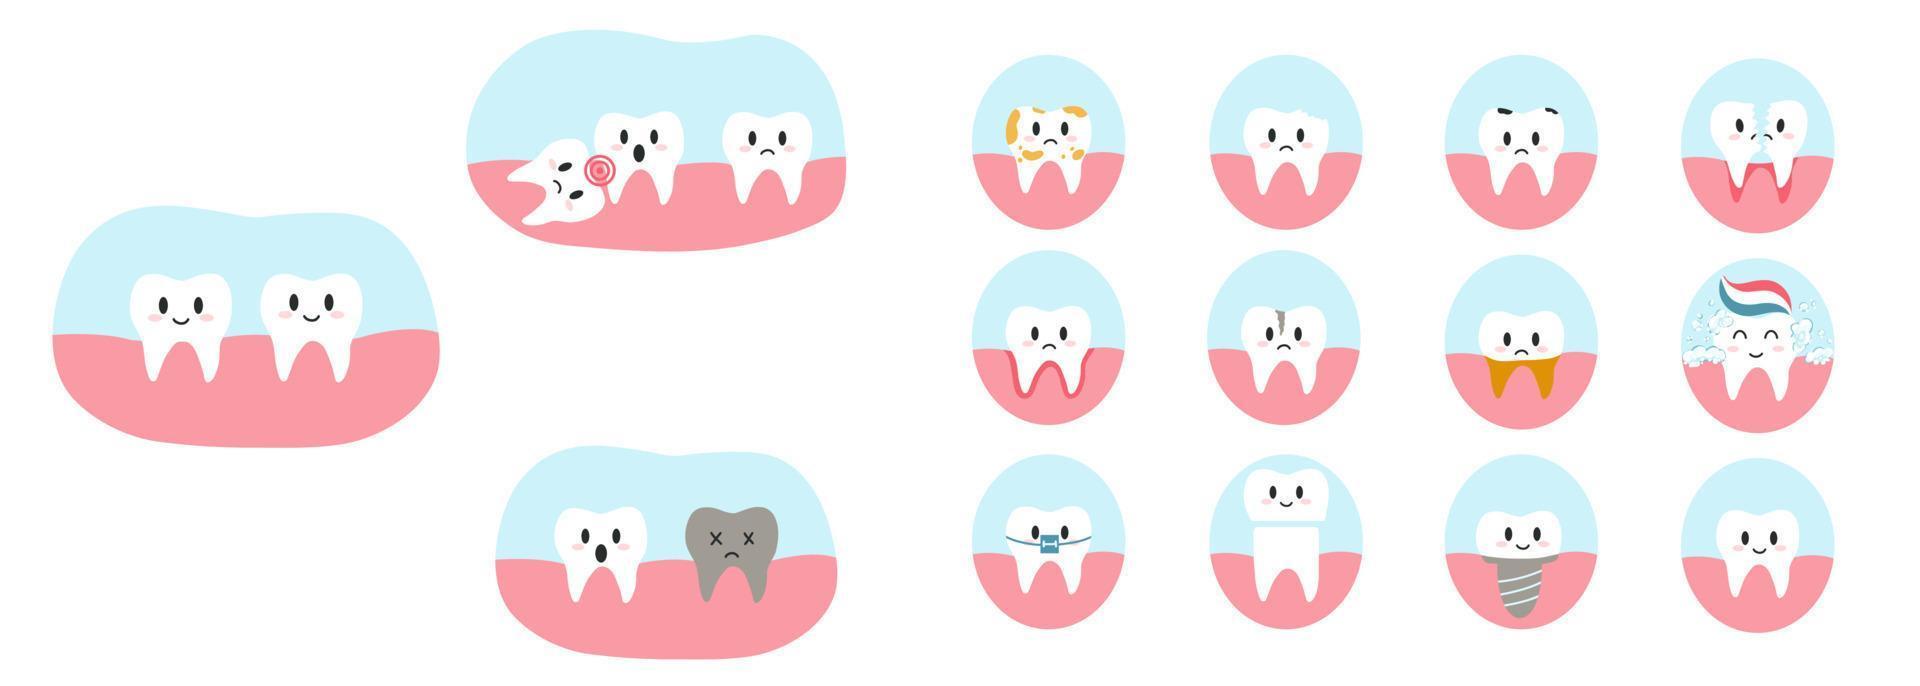 uppsättning av tänder tecken i tecknad serie platt stil. vektor illustration av olika dental sjukdomar och tand skick, som karies, spricka, dela, gingivit, implantera, visdom tand för broschyr, tandläkare klinik